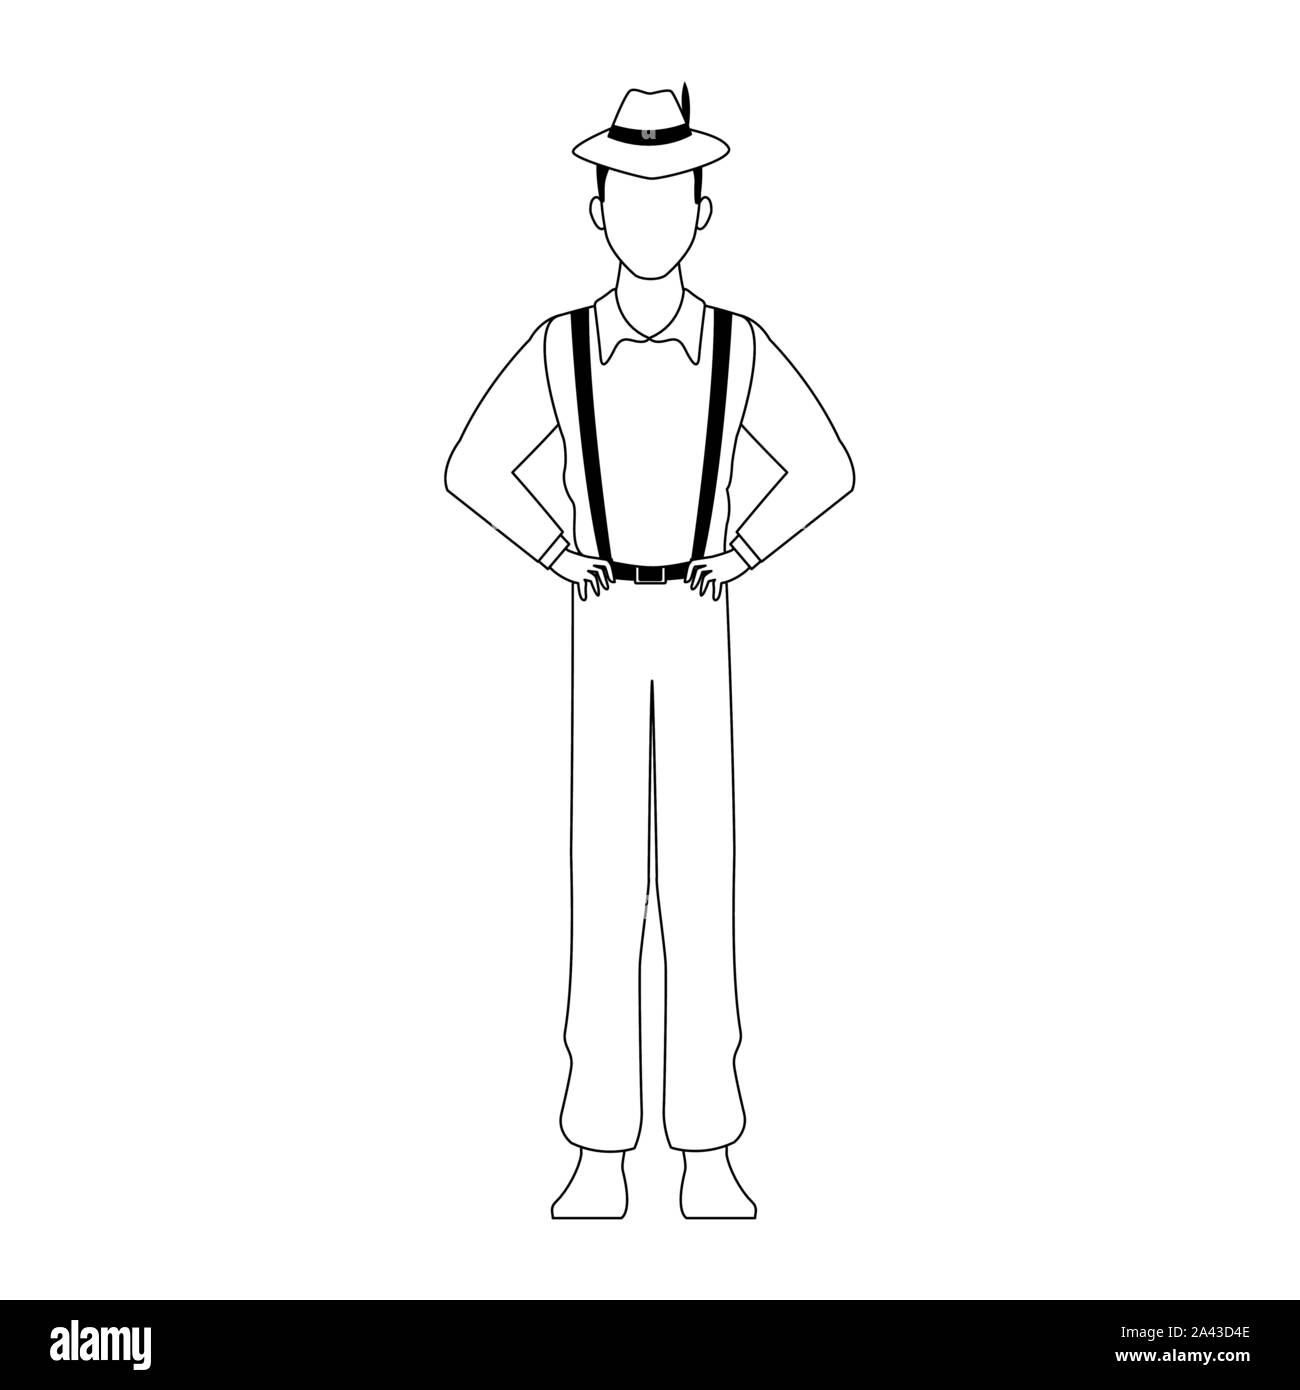 L'homme dessin animé avec bretelles, modèle plat Image Vectorielle Stock -  Alamy